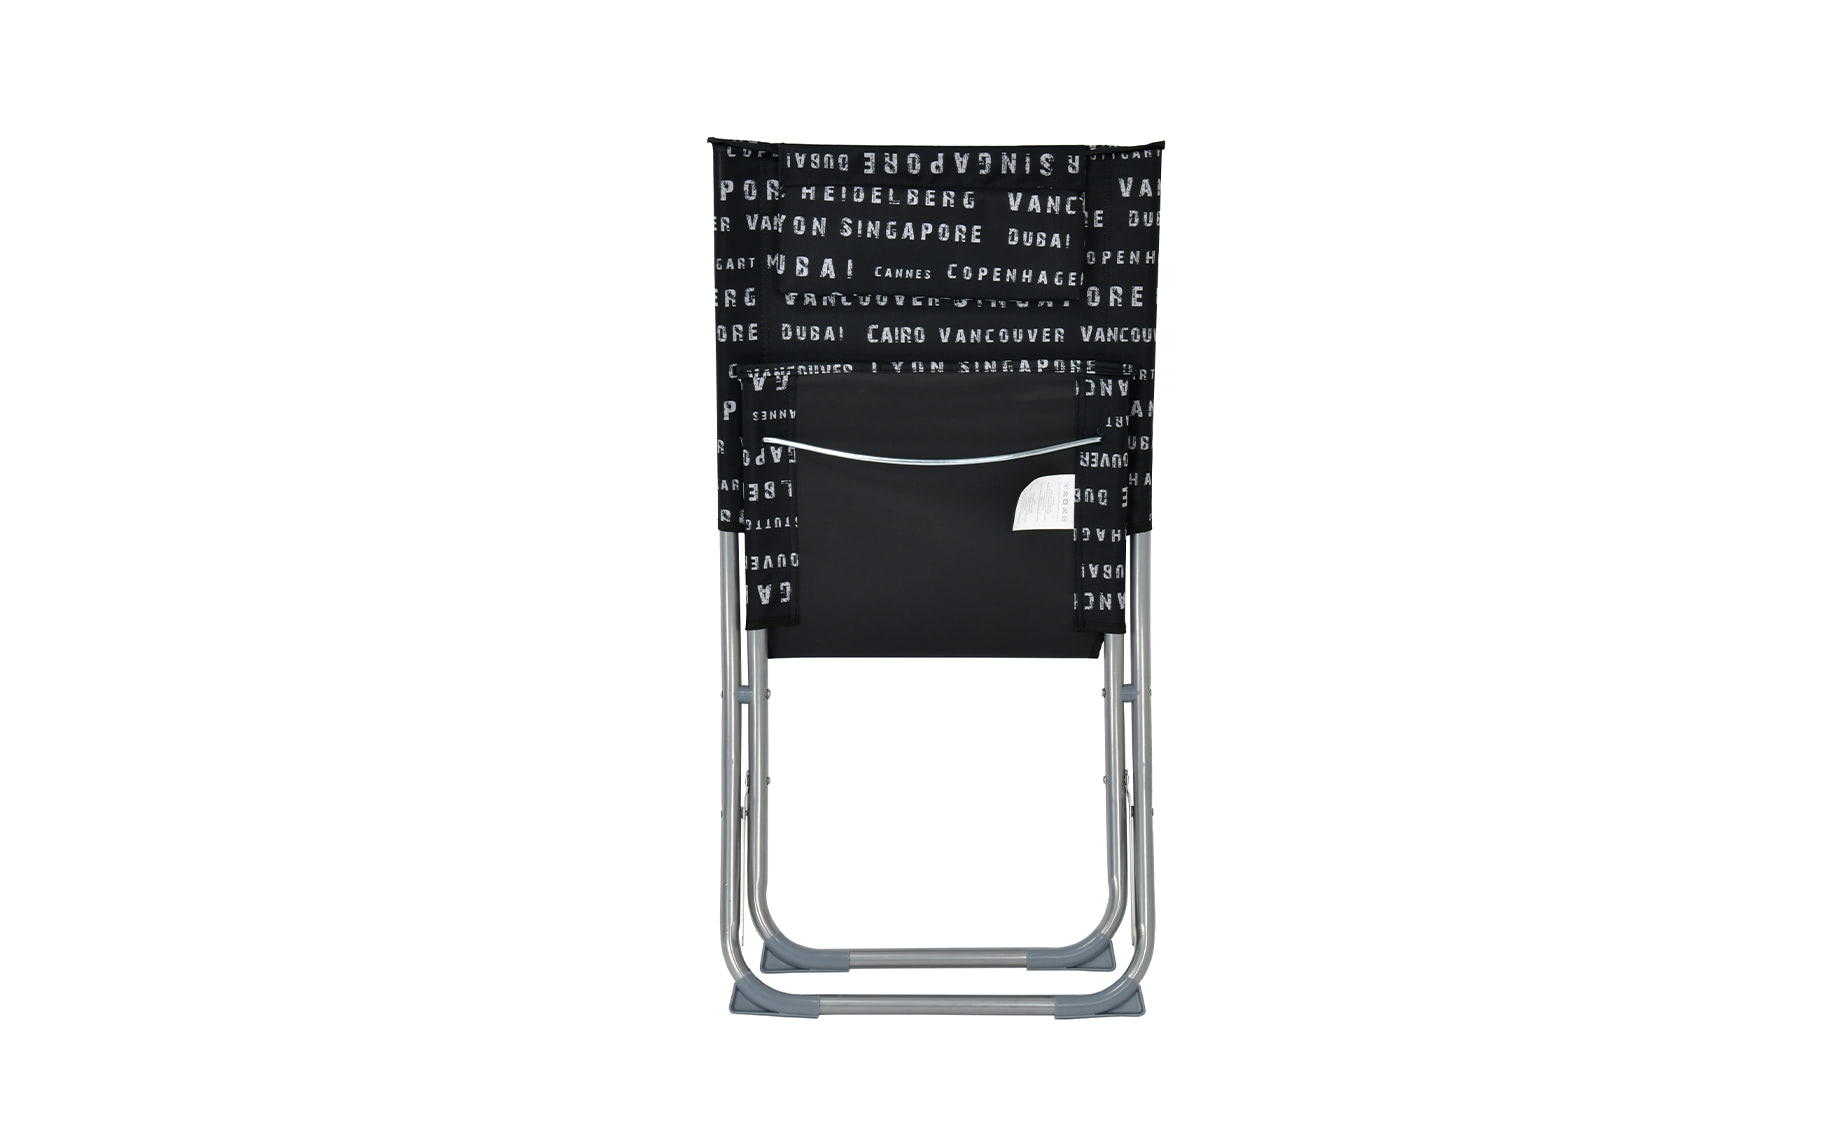 Playa sklopiva stolica sa jastukom 68x48x73cm crna